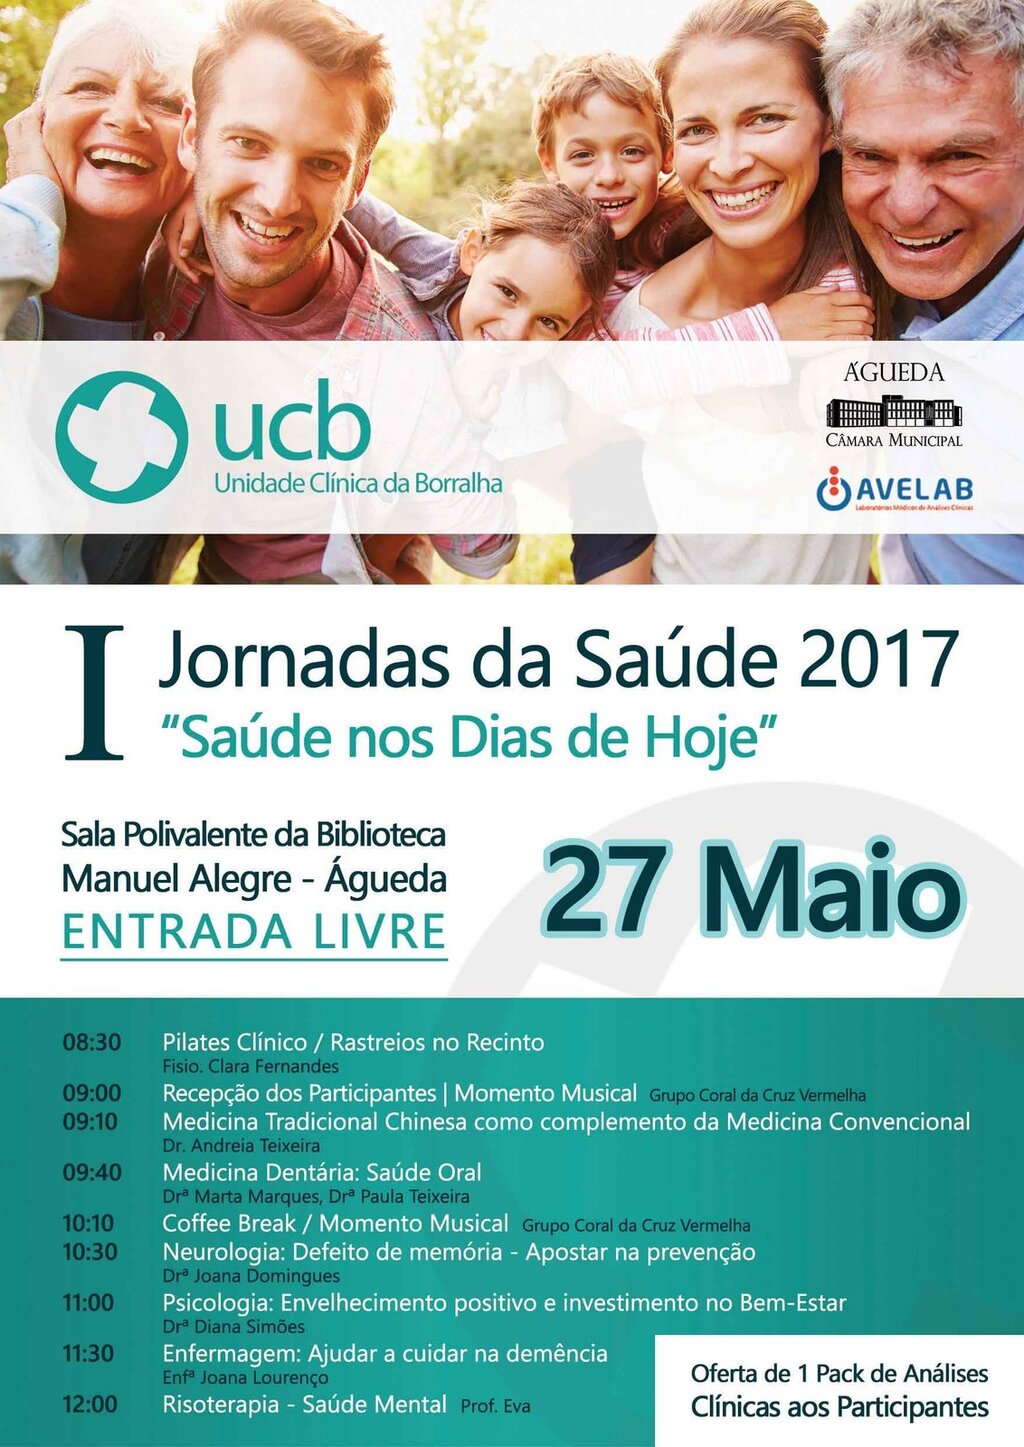 Jornadas da Saúde da UCB :: 27 maio 2017